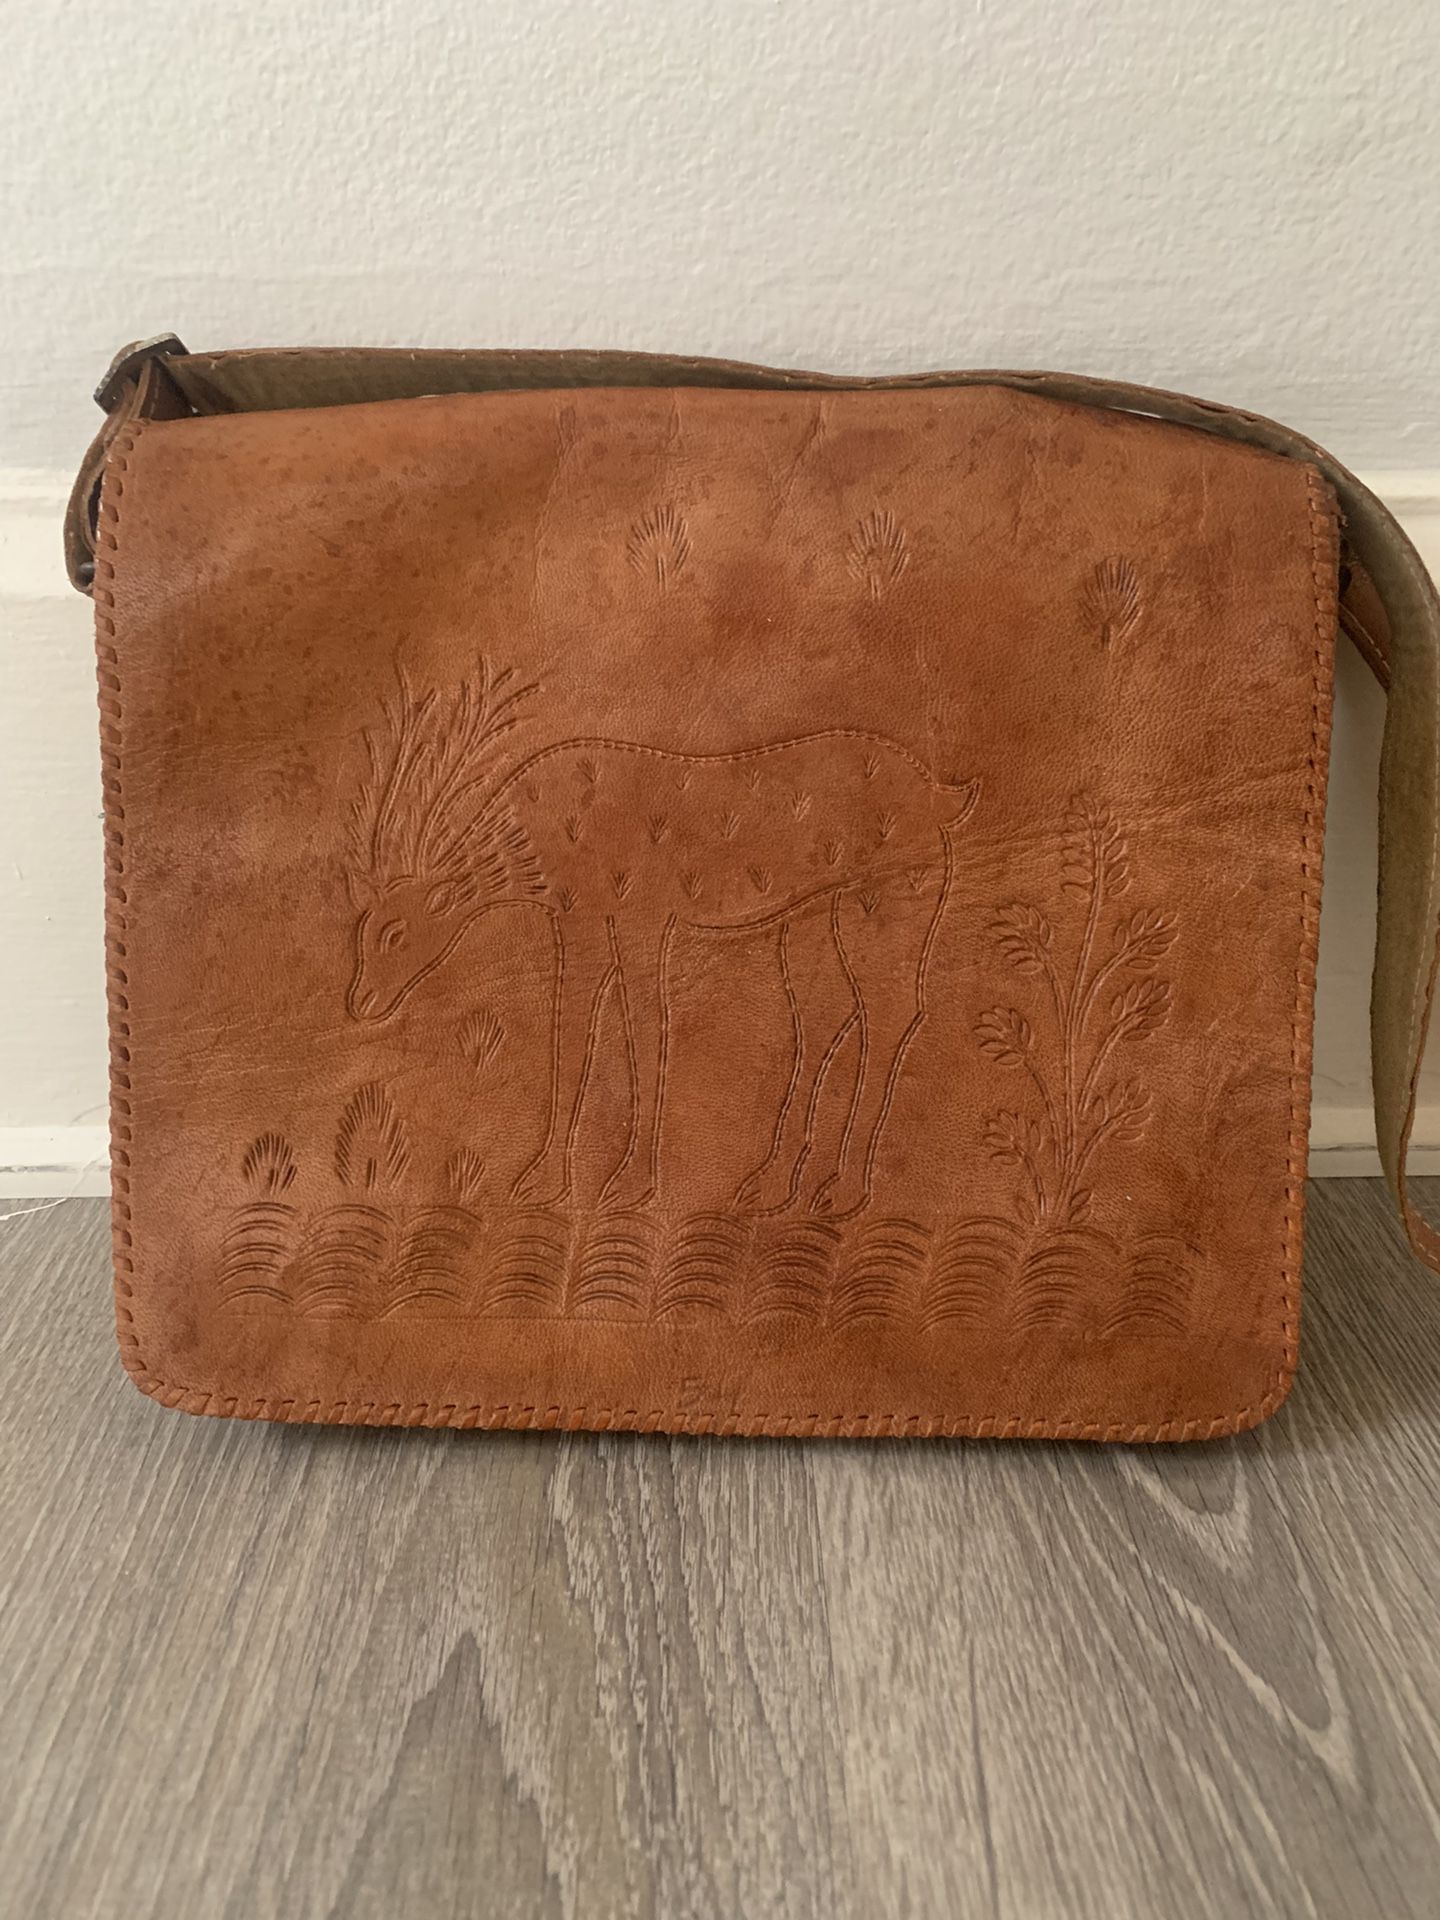 Vintage Leather Messenger Bag/Purse